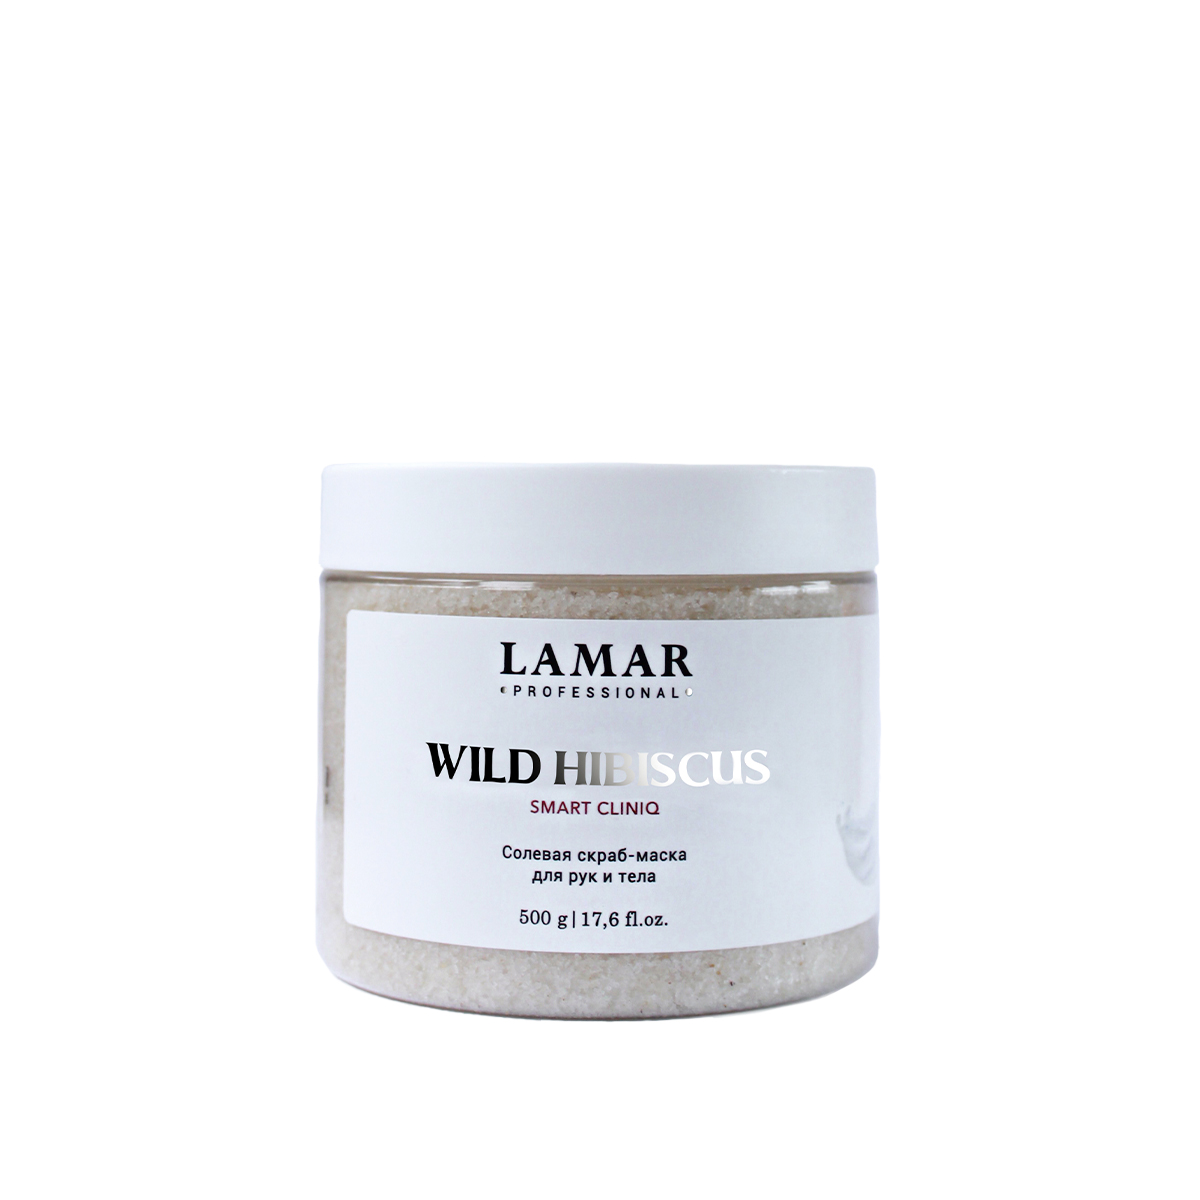 Скраб-маска для рук и тела Lamar Professional Wild hibiscus солевая 500 г грелка солевая торг лайнс божья коровка